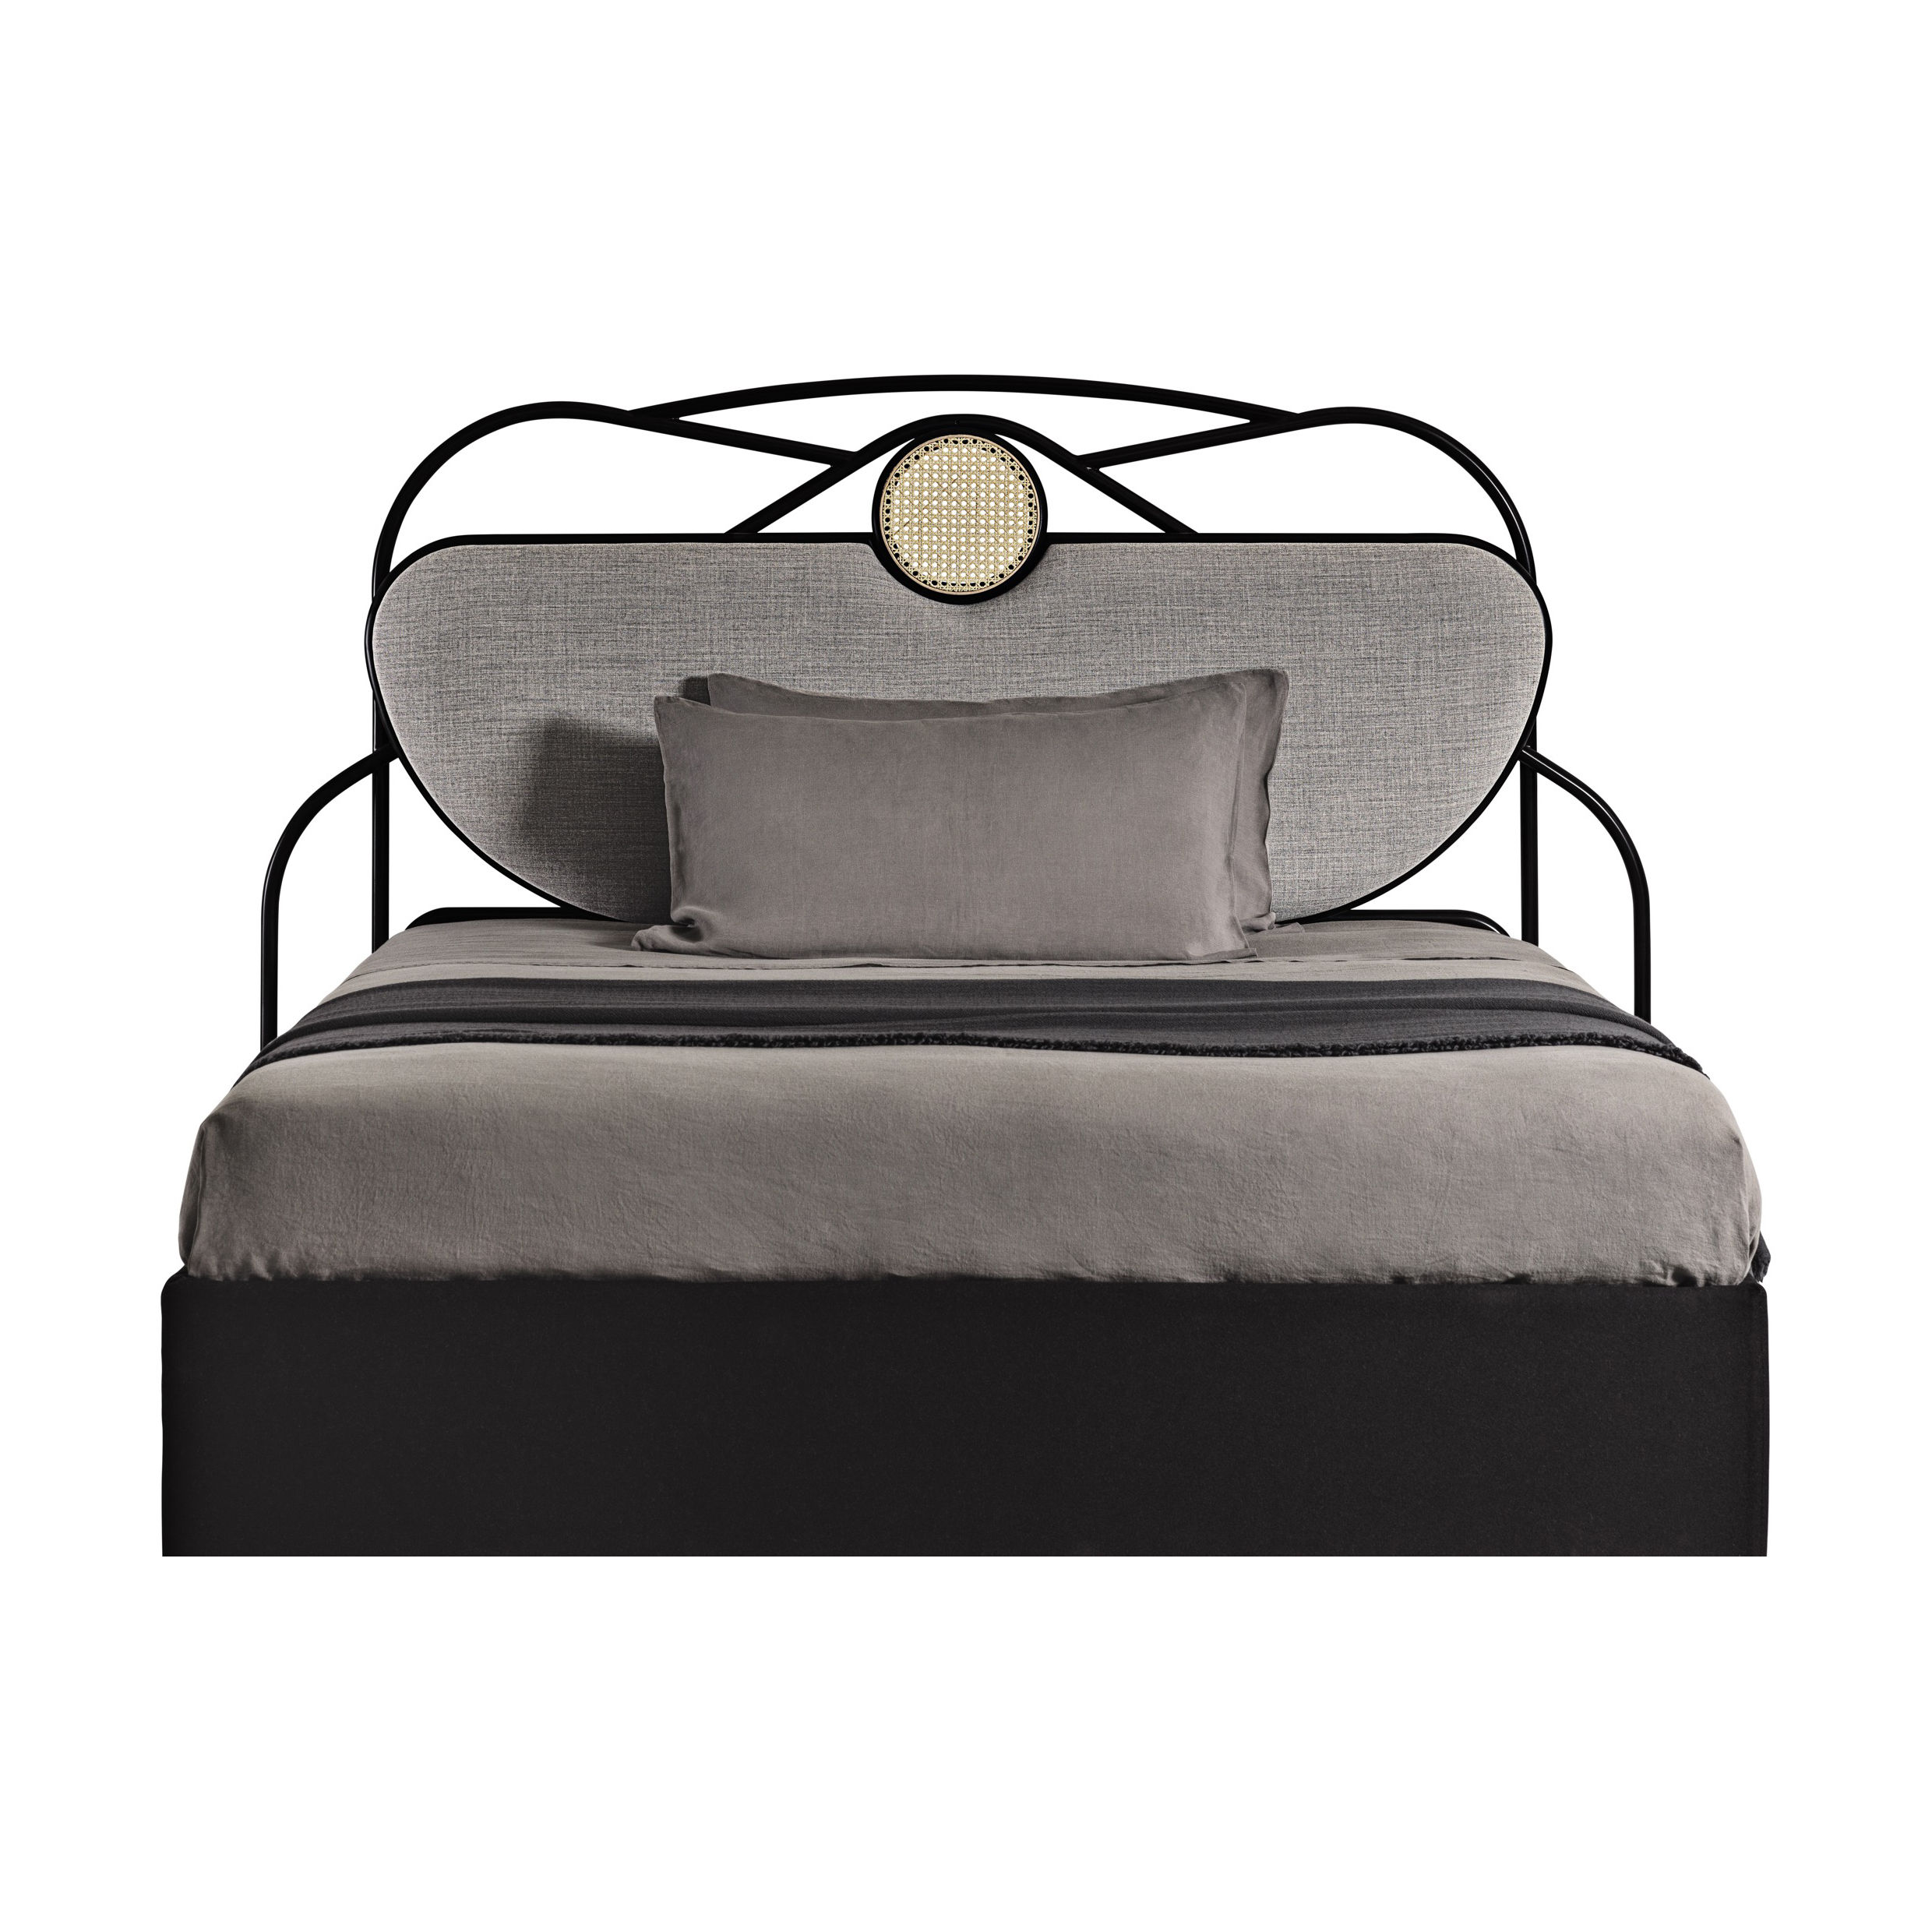 Tête de lit Yvette / L 200 x  H 121 cm - Rembourrée - Wiener GTV Design gris/noir/beige en fibre végétale/bois